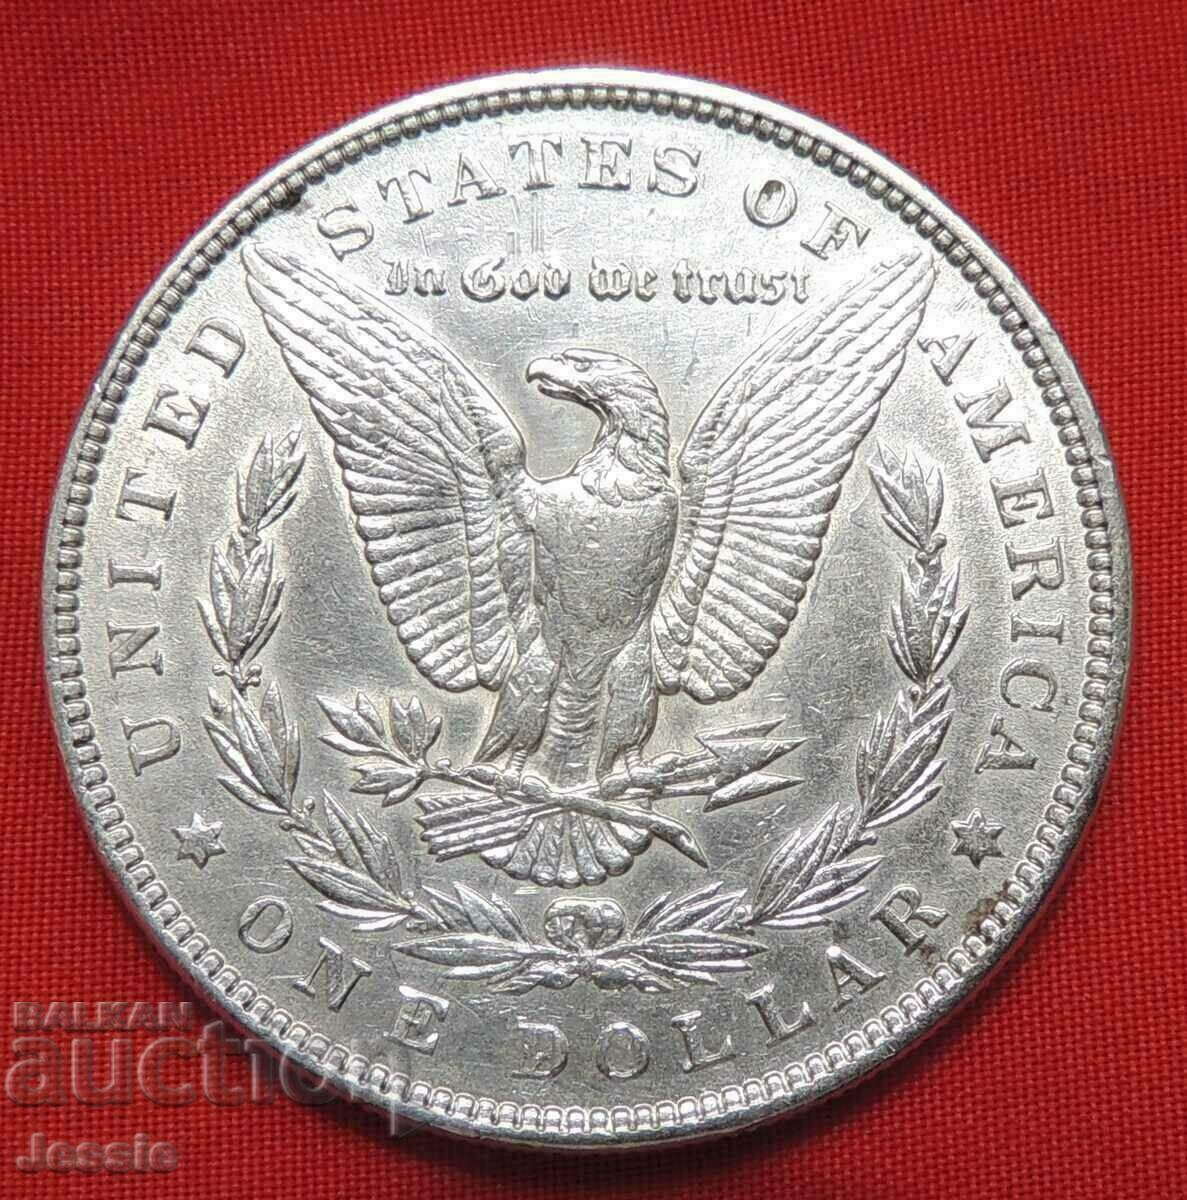 1 Dollar 1885 USA Morgan Silver NO MADE IN CHINA !